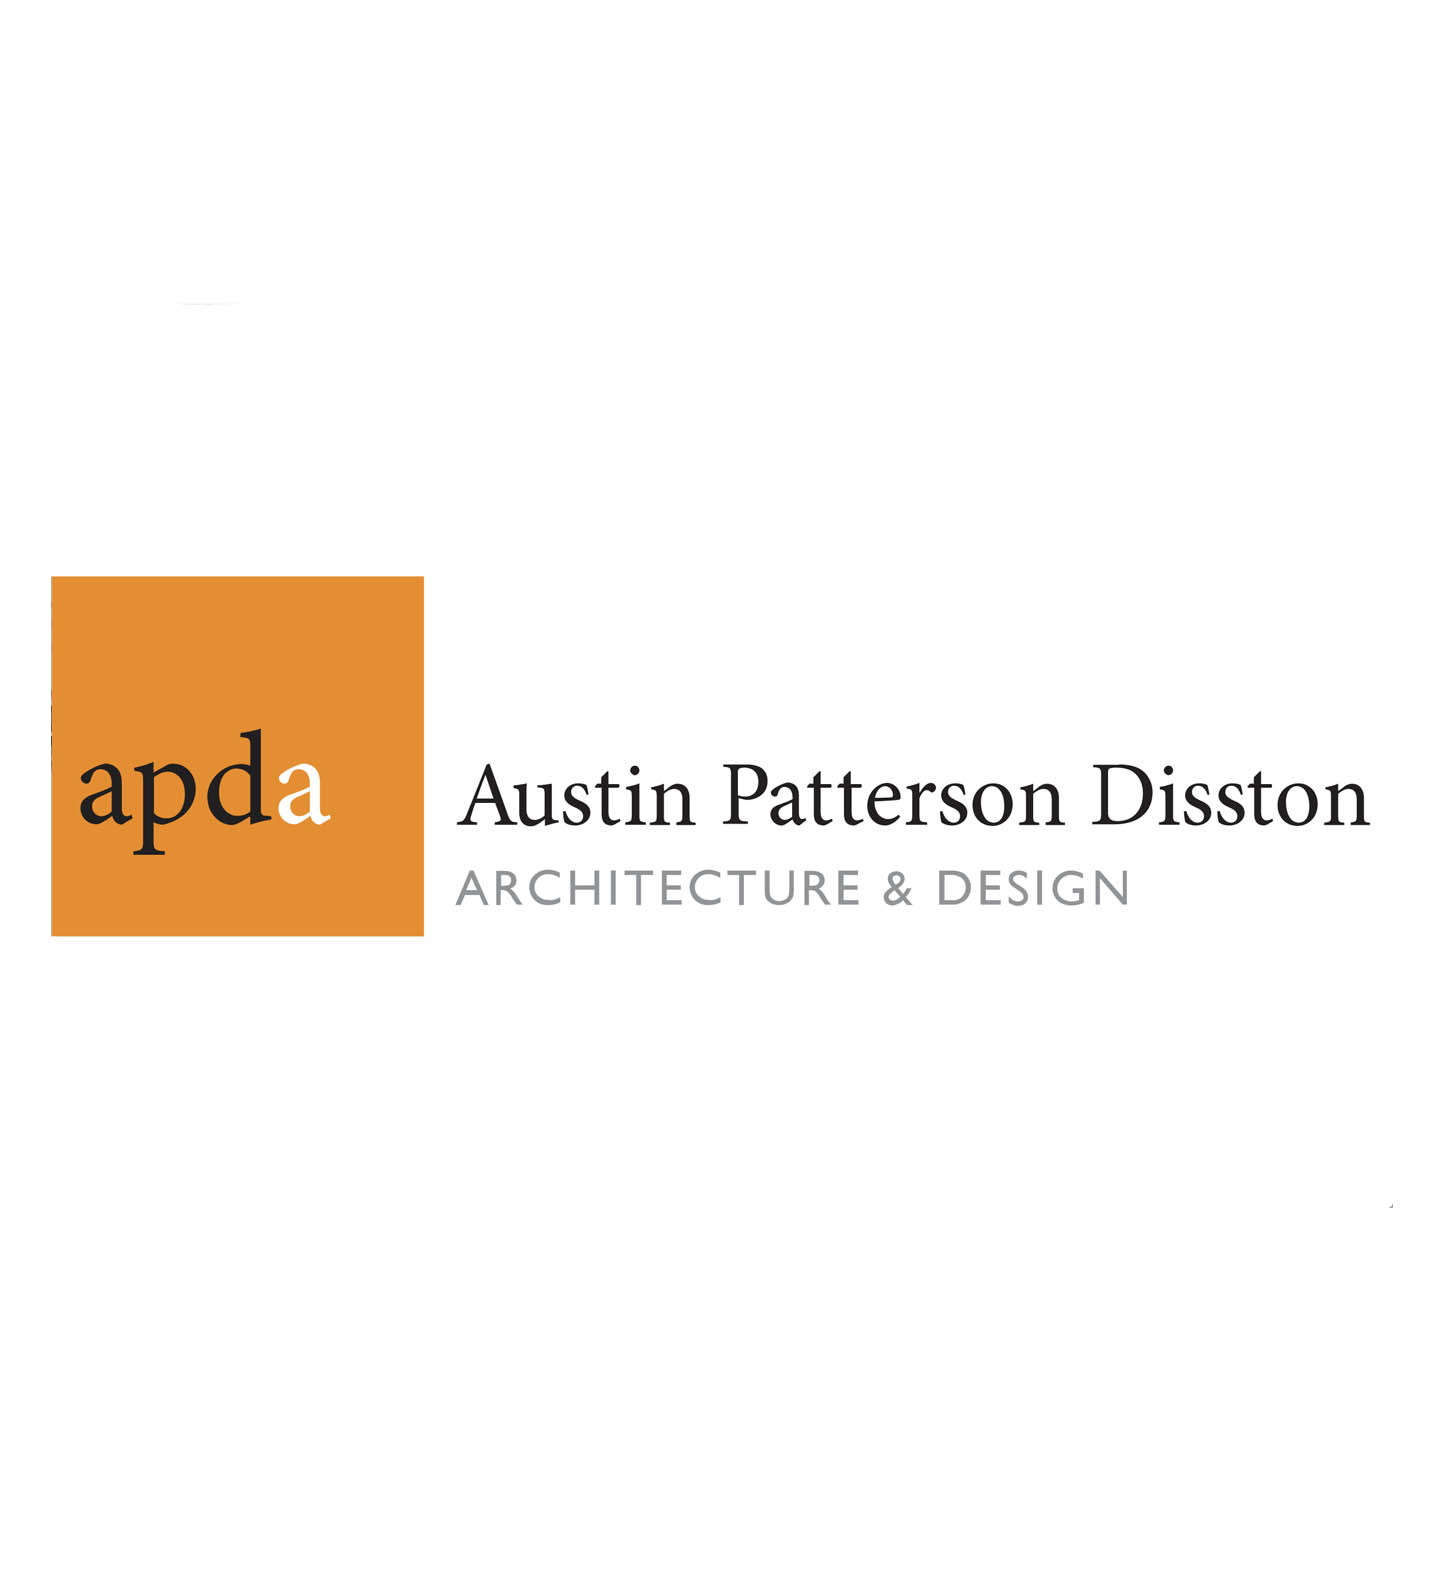 AUSTIN PATTERSON DISSTON